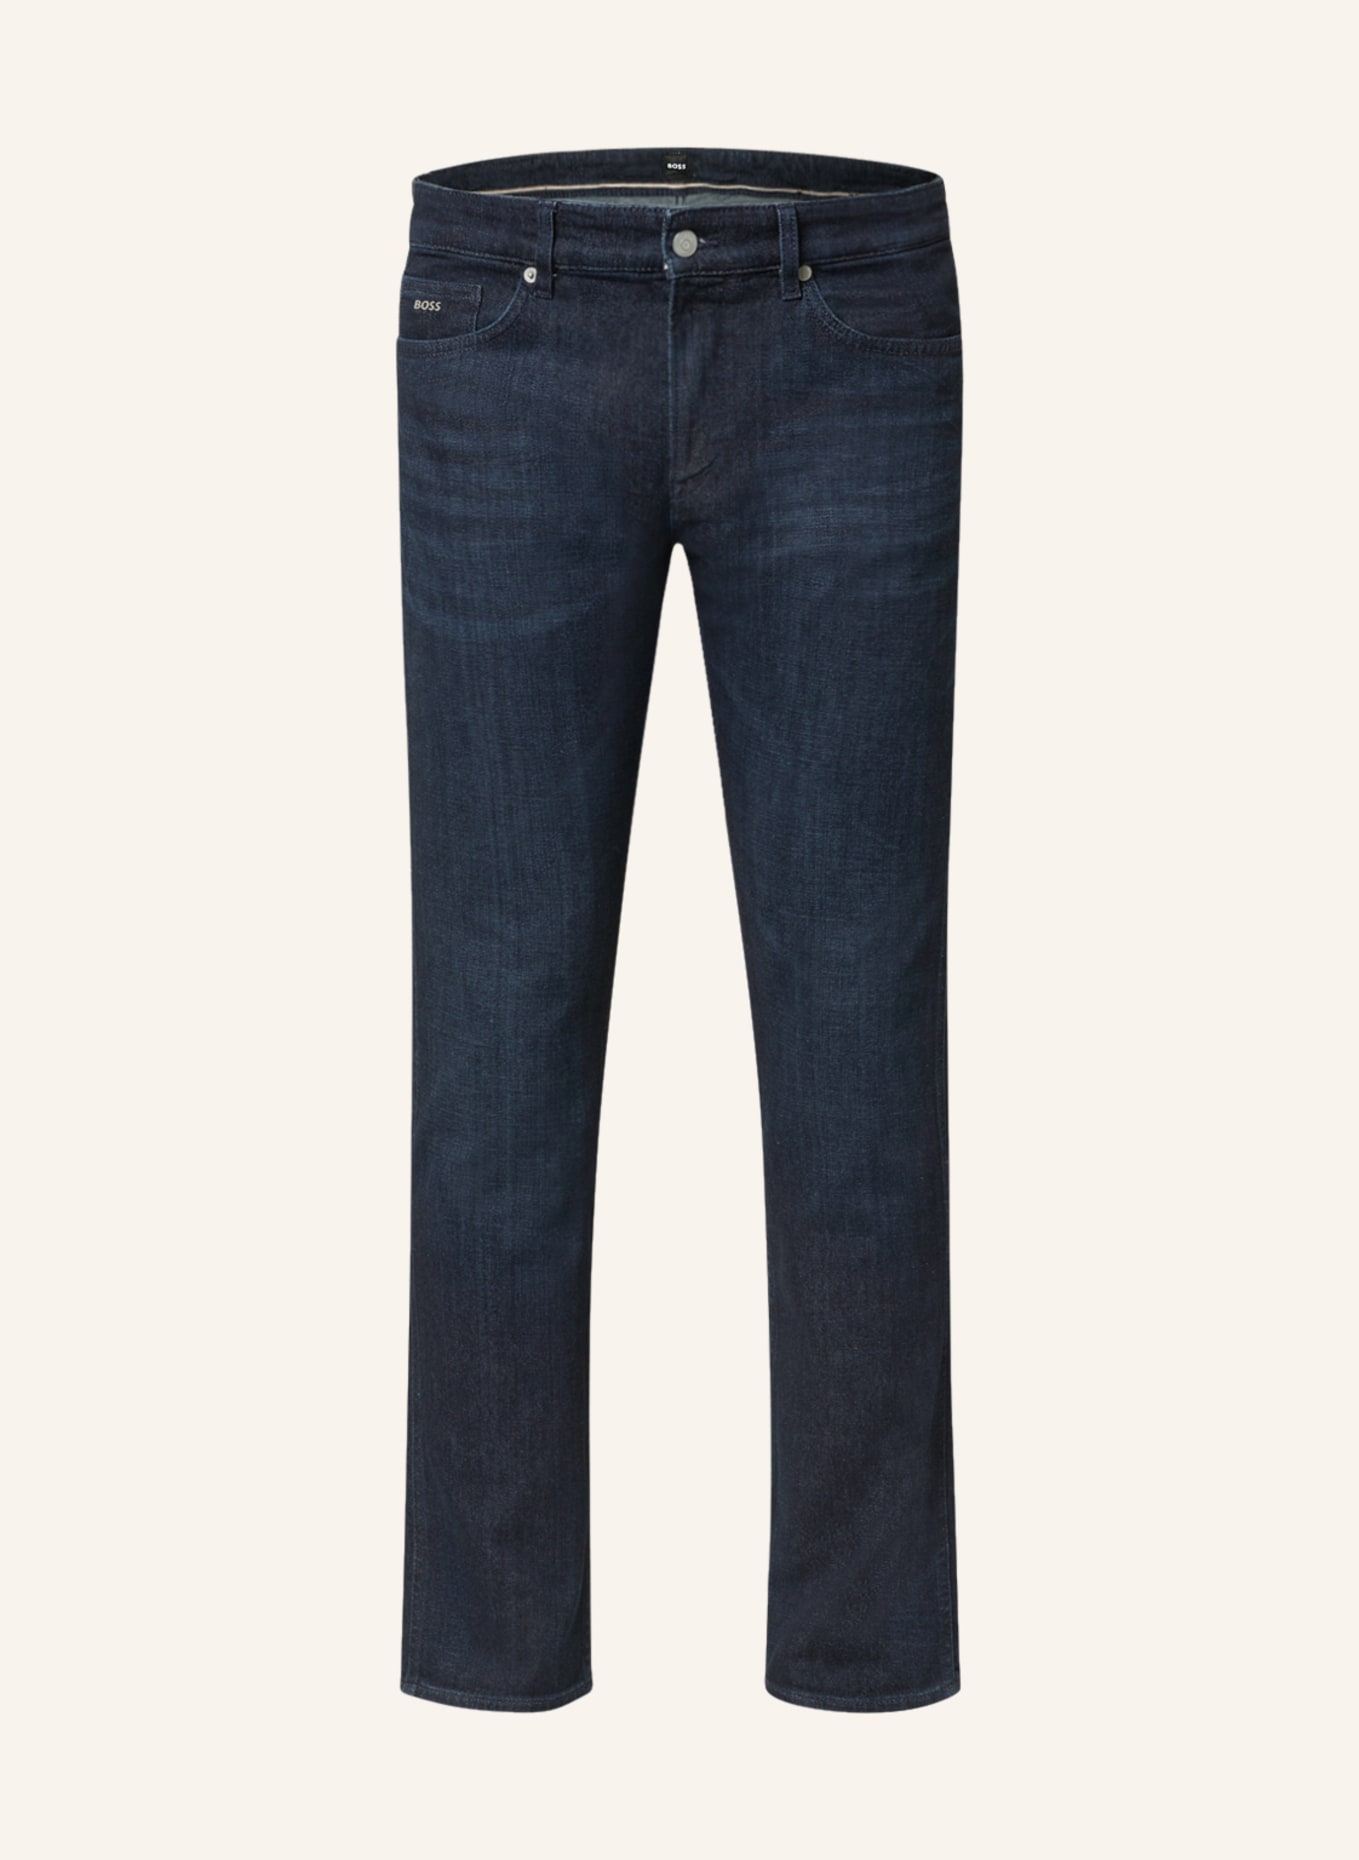 BOSS Jeans DELAWARE Slim Fit , Farbe: 415 NAVY (Bild 1)